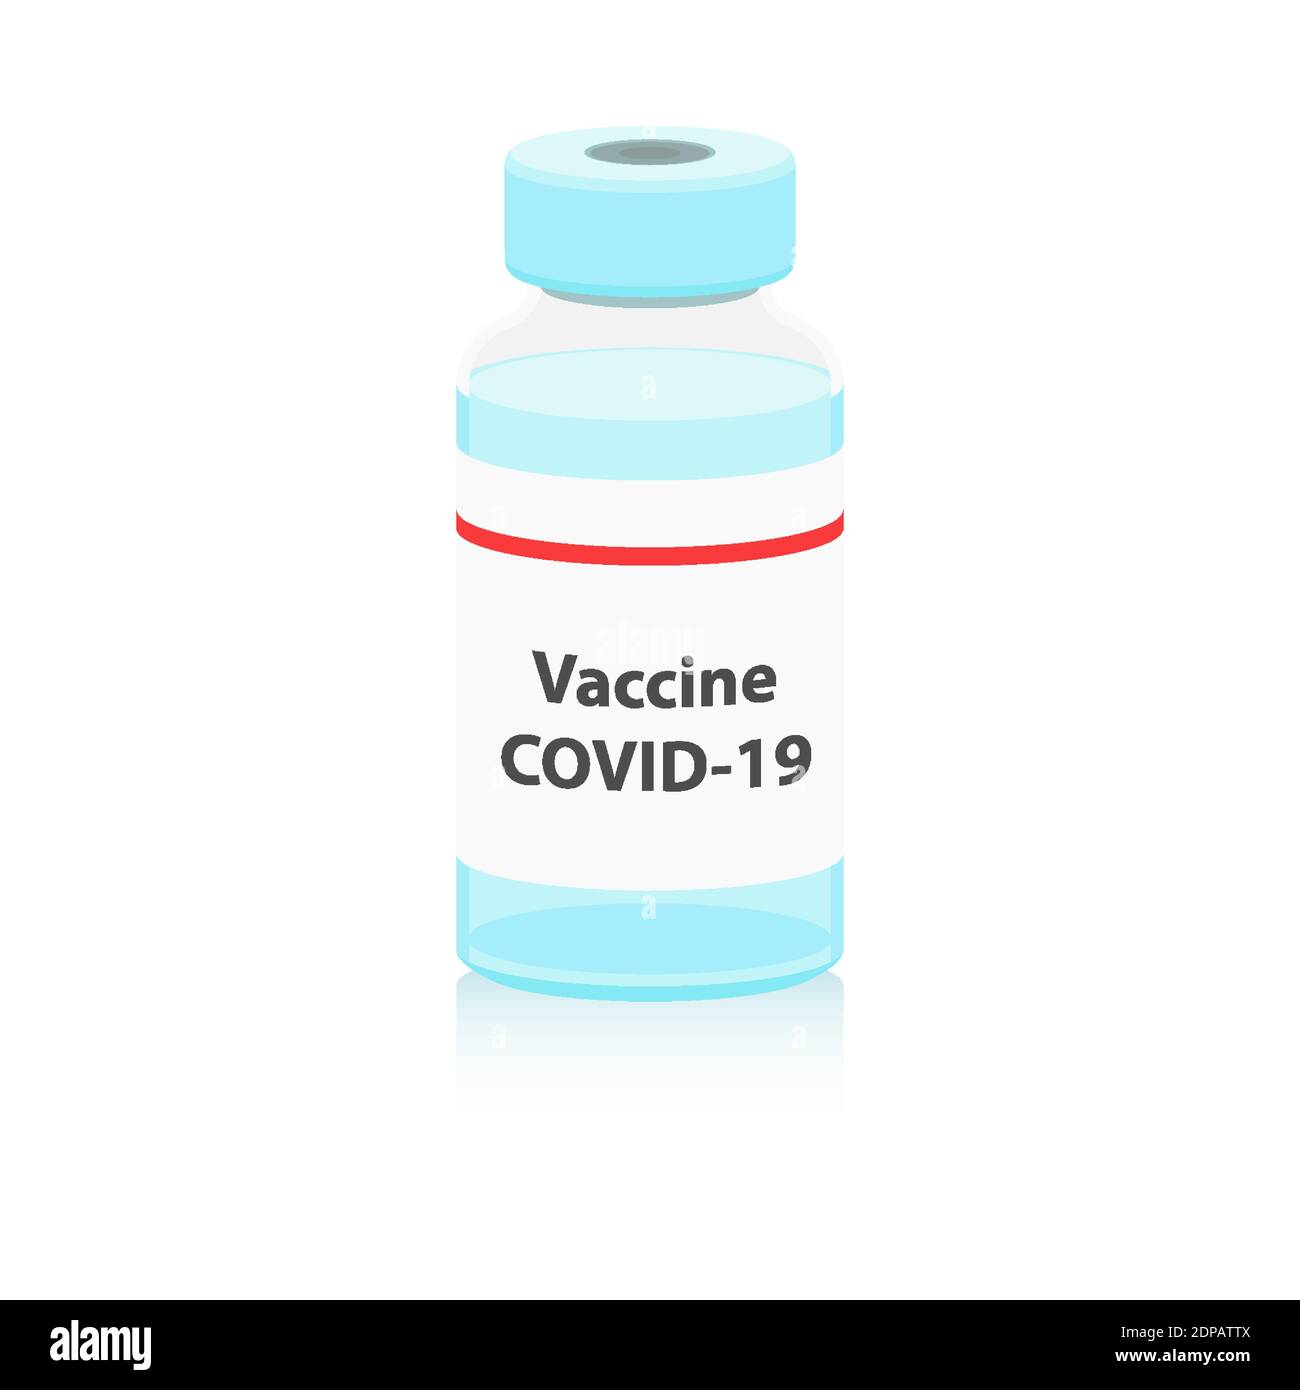 Flasche Mit Coronavirus-Impfstoff. Impfkonzept Mockup. Behandlung Immunisierung COVID-19 Pandemischer Hintergrund. Flache Vektorgrafik. Eps 10 Stock Vektor